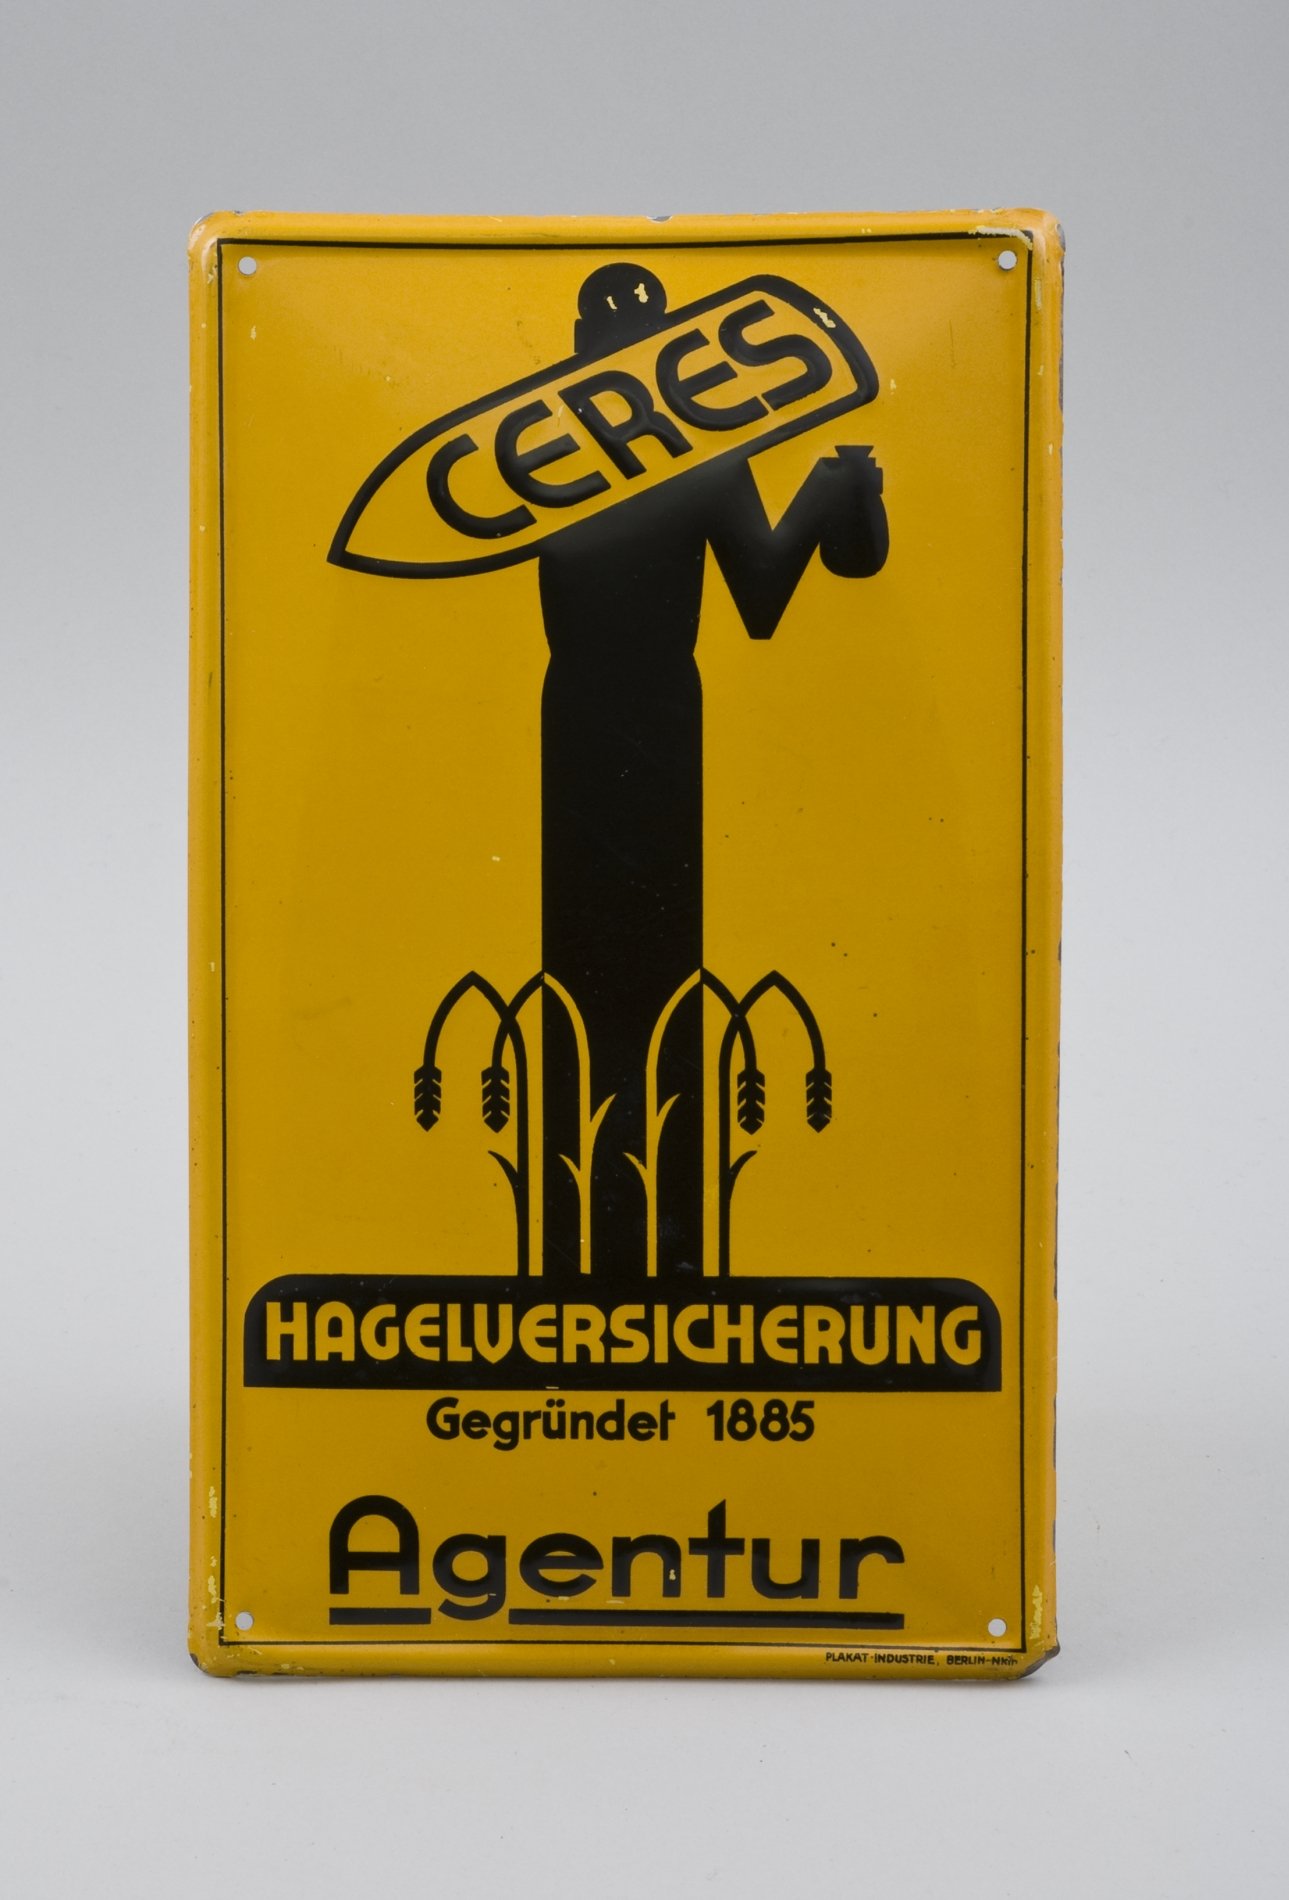 Reklameschild "CERES Hagelversicherung" (Stiftung Domäne Dahlem - Landgut und Museum, Weiternutzung nur mit Genehmigung des Museums CC BY-NC-SA)